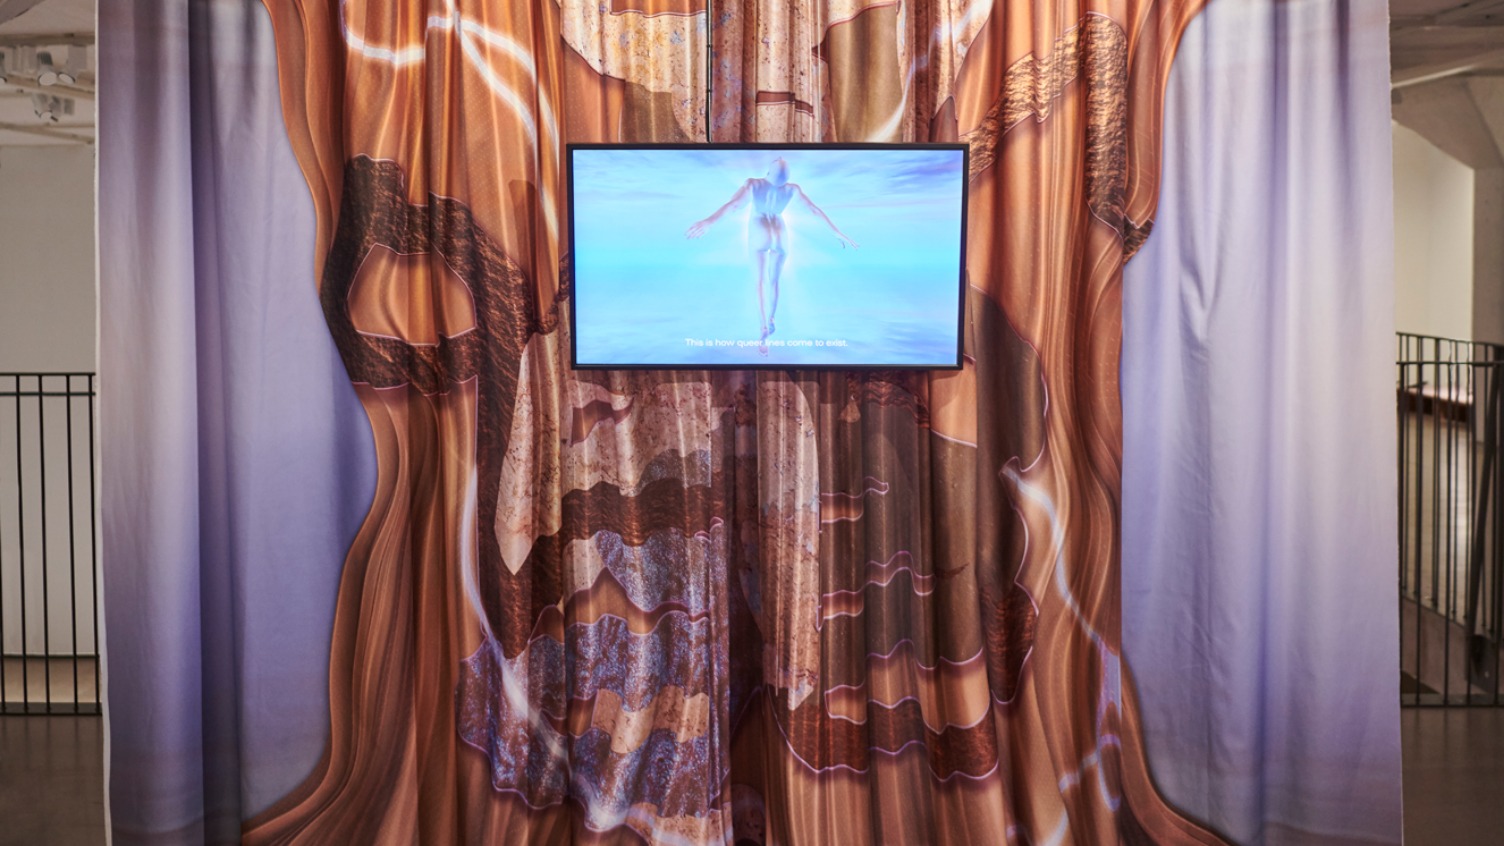 Ett lila draperi med ett brunt mönster och en skärm som visar en naken person i turkosa fluorescerande färger.